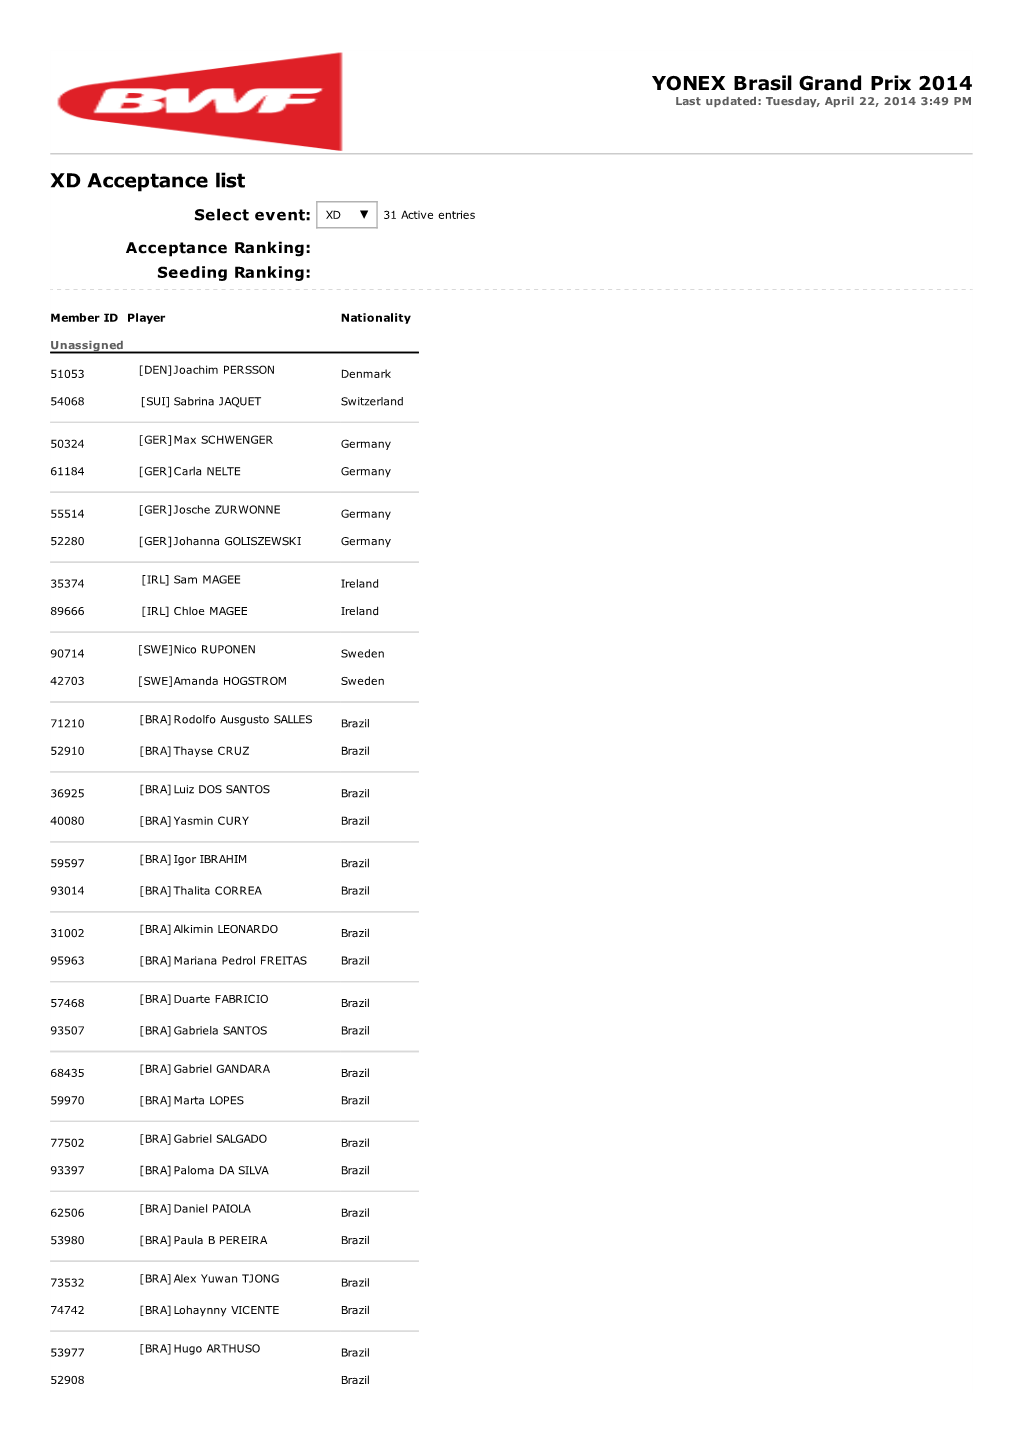 XD Acceptance List YONEX Brasil Grand Prix 2014